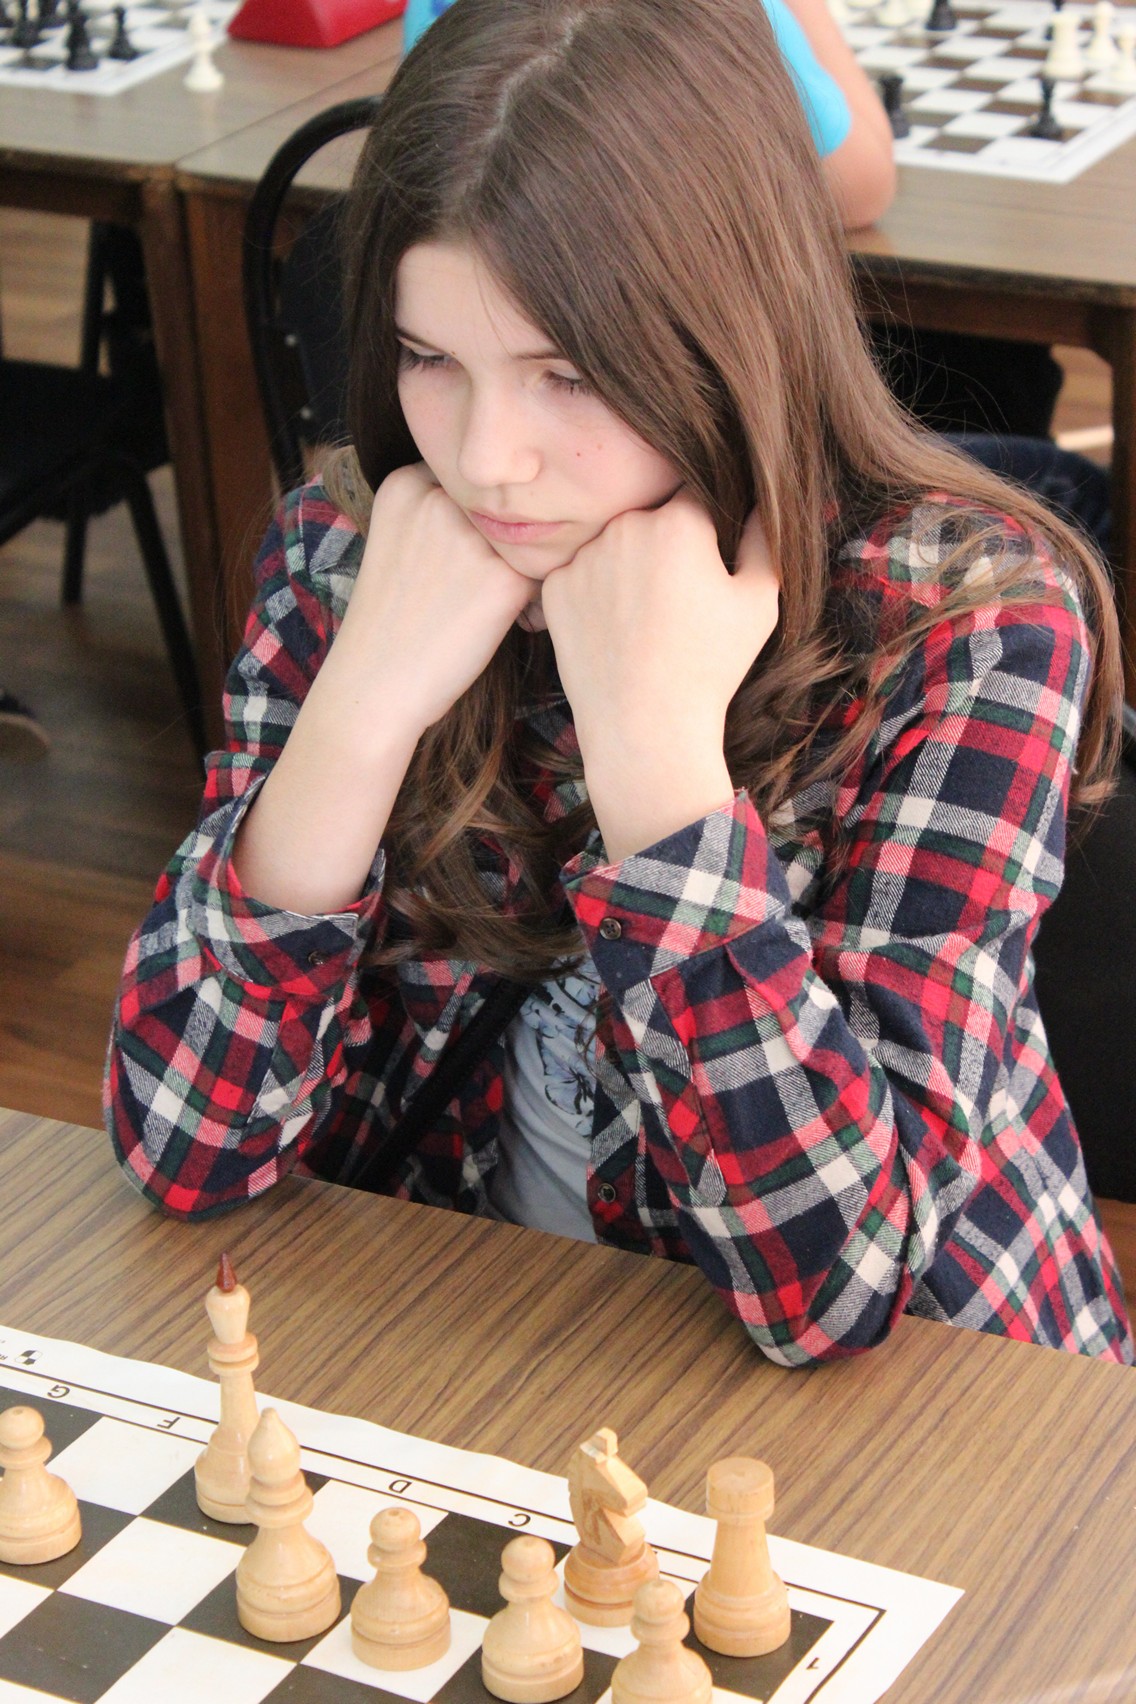 Юношеский турнир по быстрым шахматам на призы ЗАО "Гидрстрой"